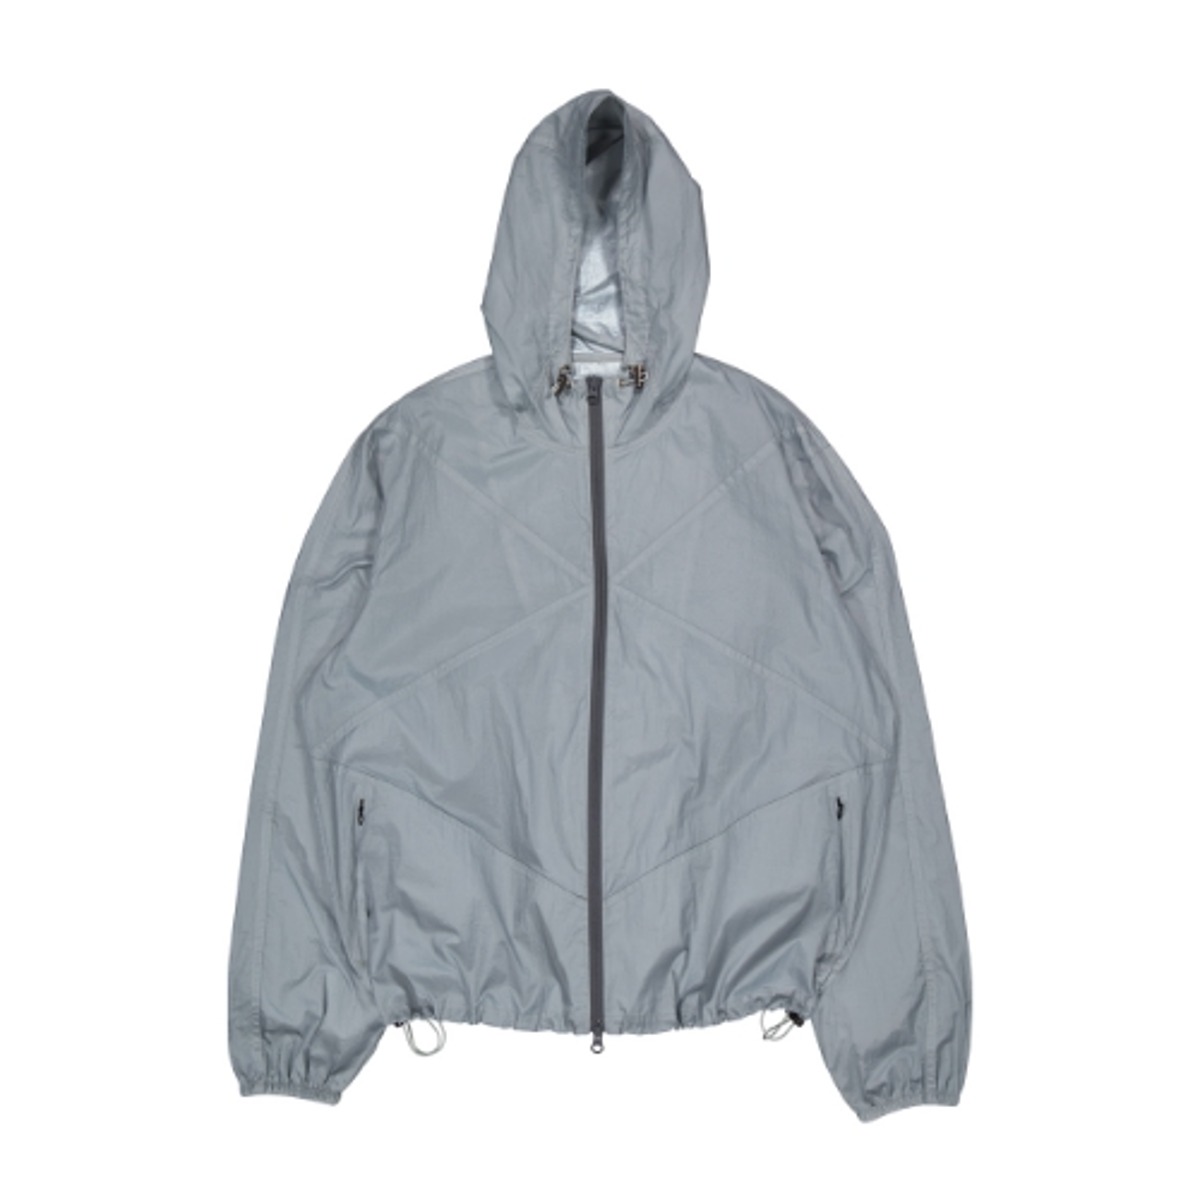 TCM diagonal windstopper jacket (grey)